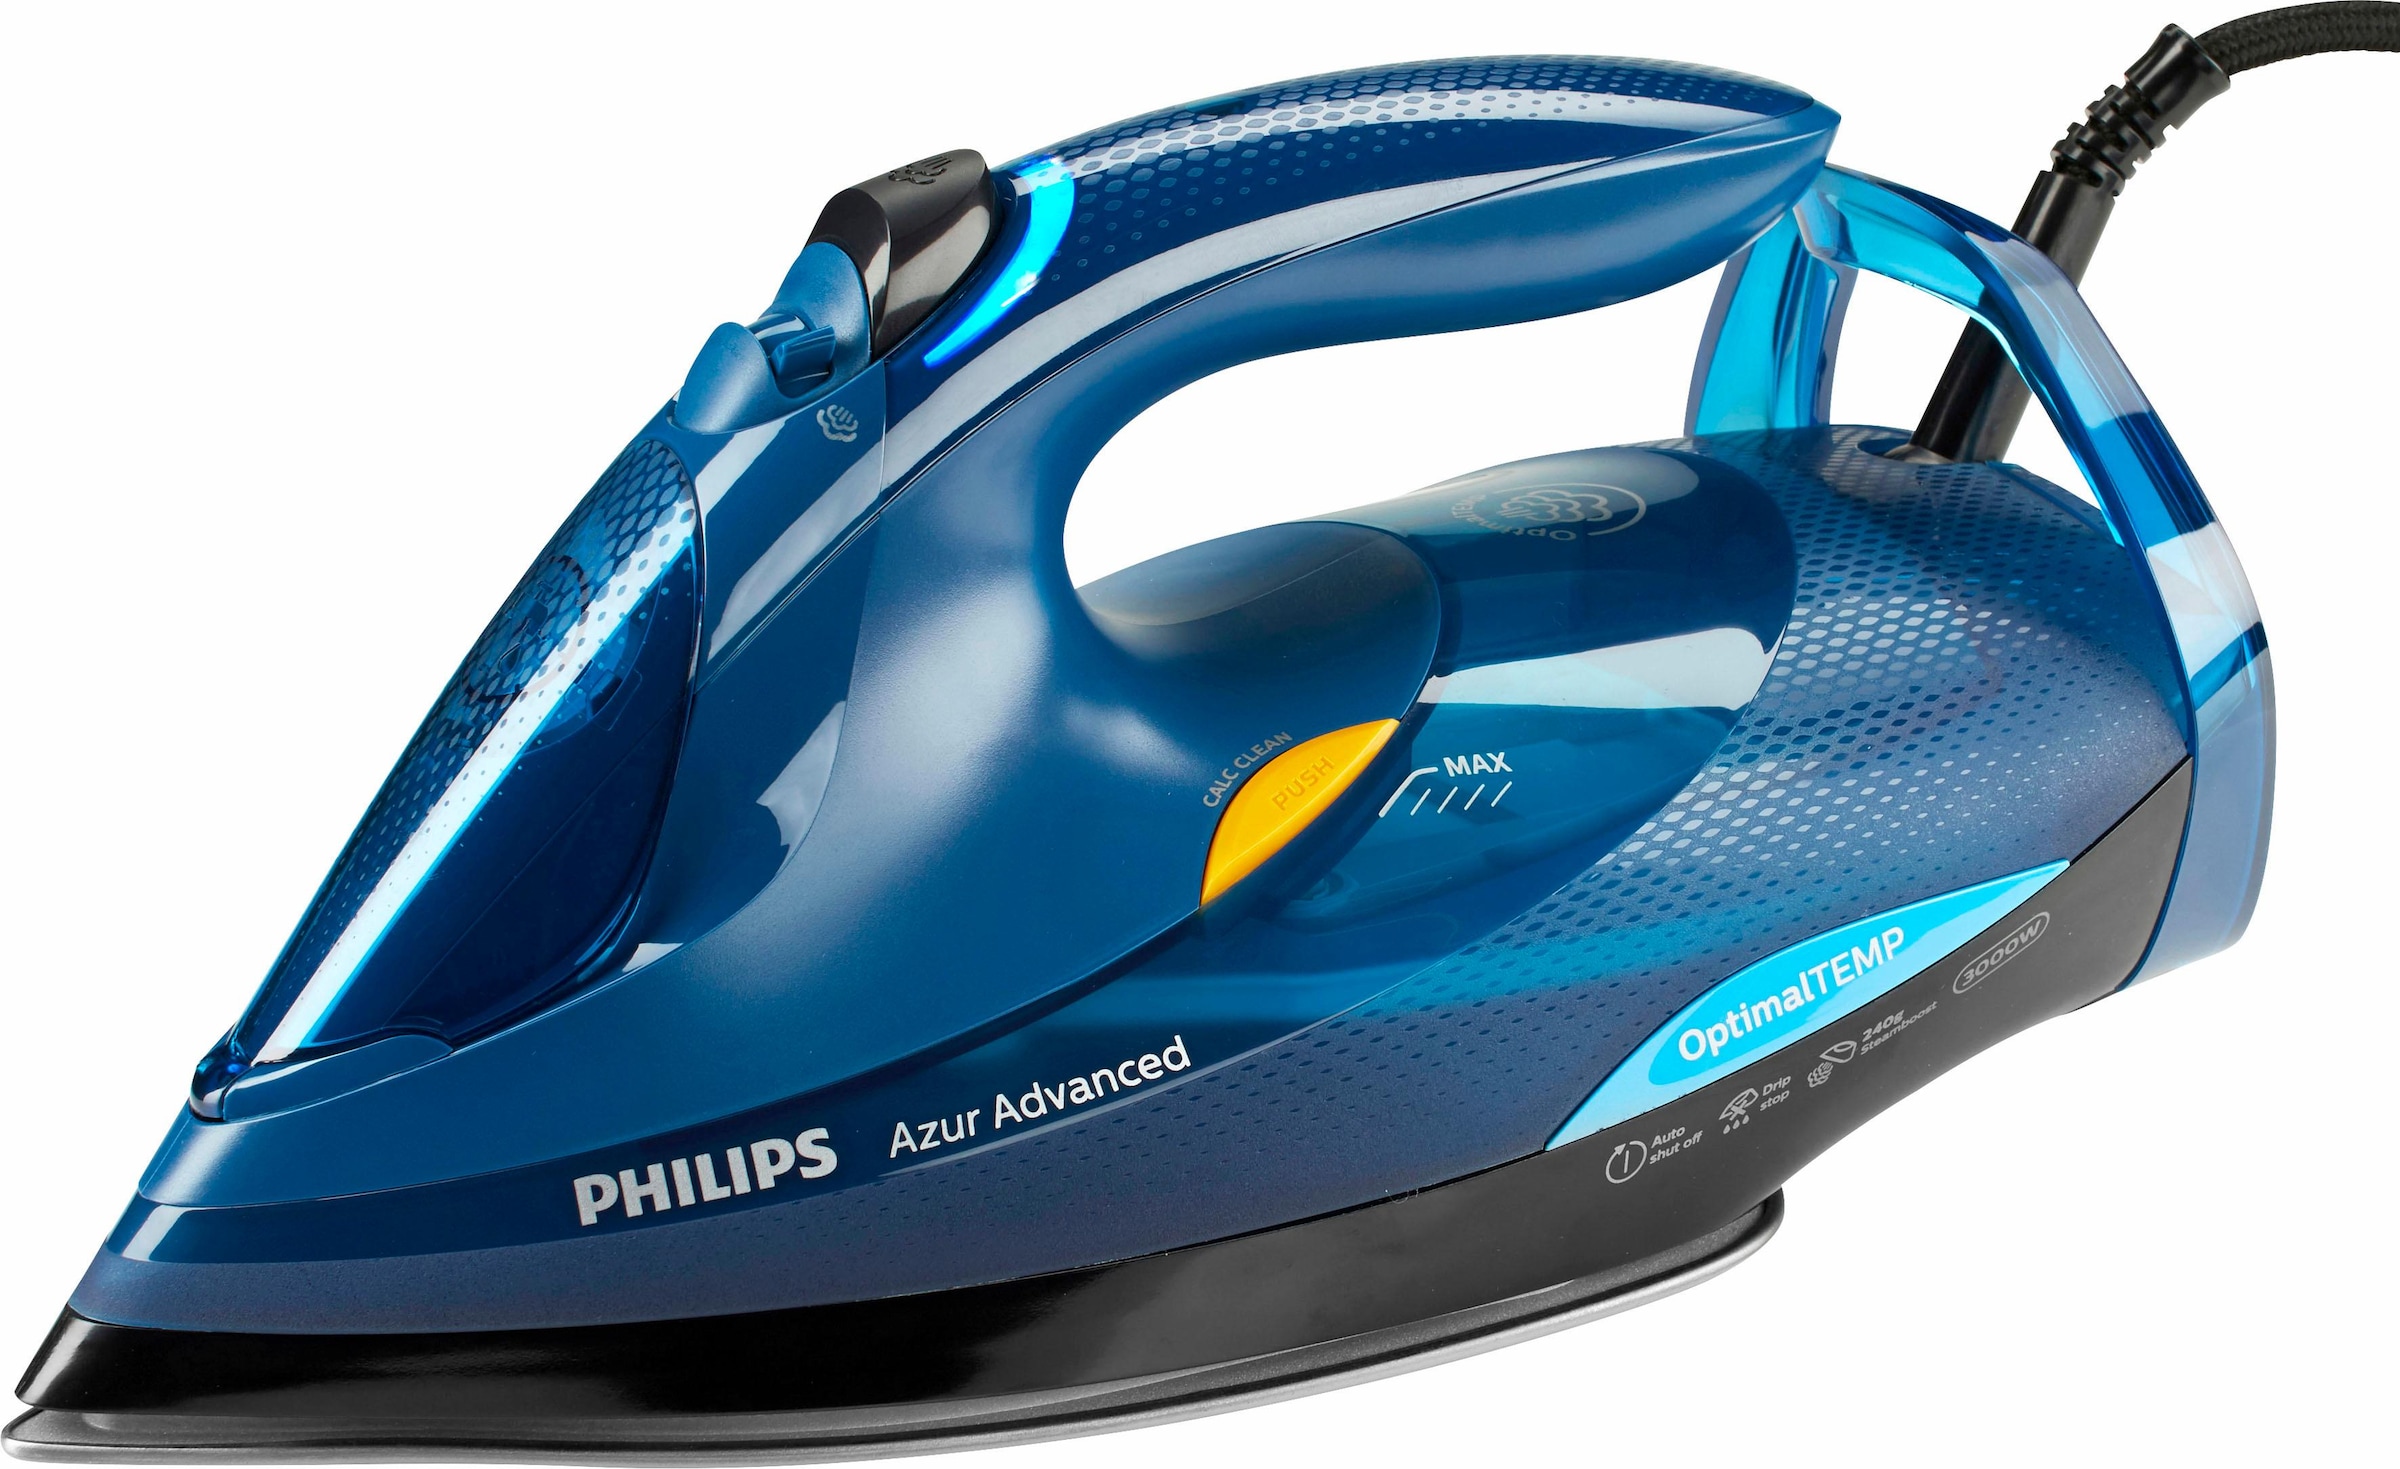 Philips Dampfbügeleisen »GC4937/20 Azur Advanced«, 3000 W, (240g Dampfstoß,  OptimalTEMP, Calc-Clean-System) blau | BAUR